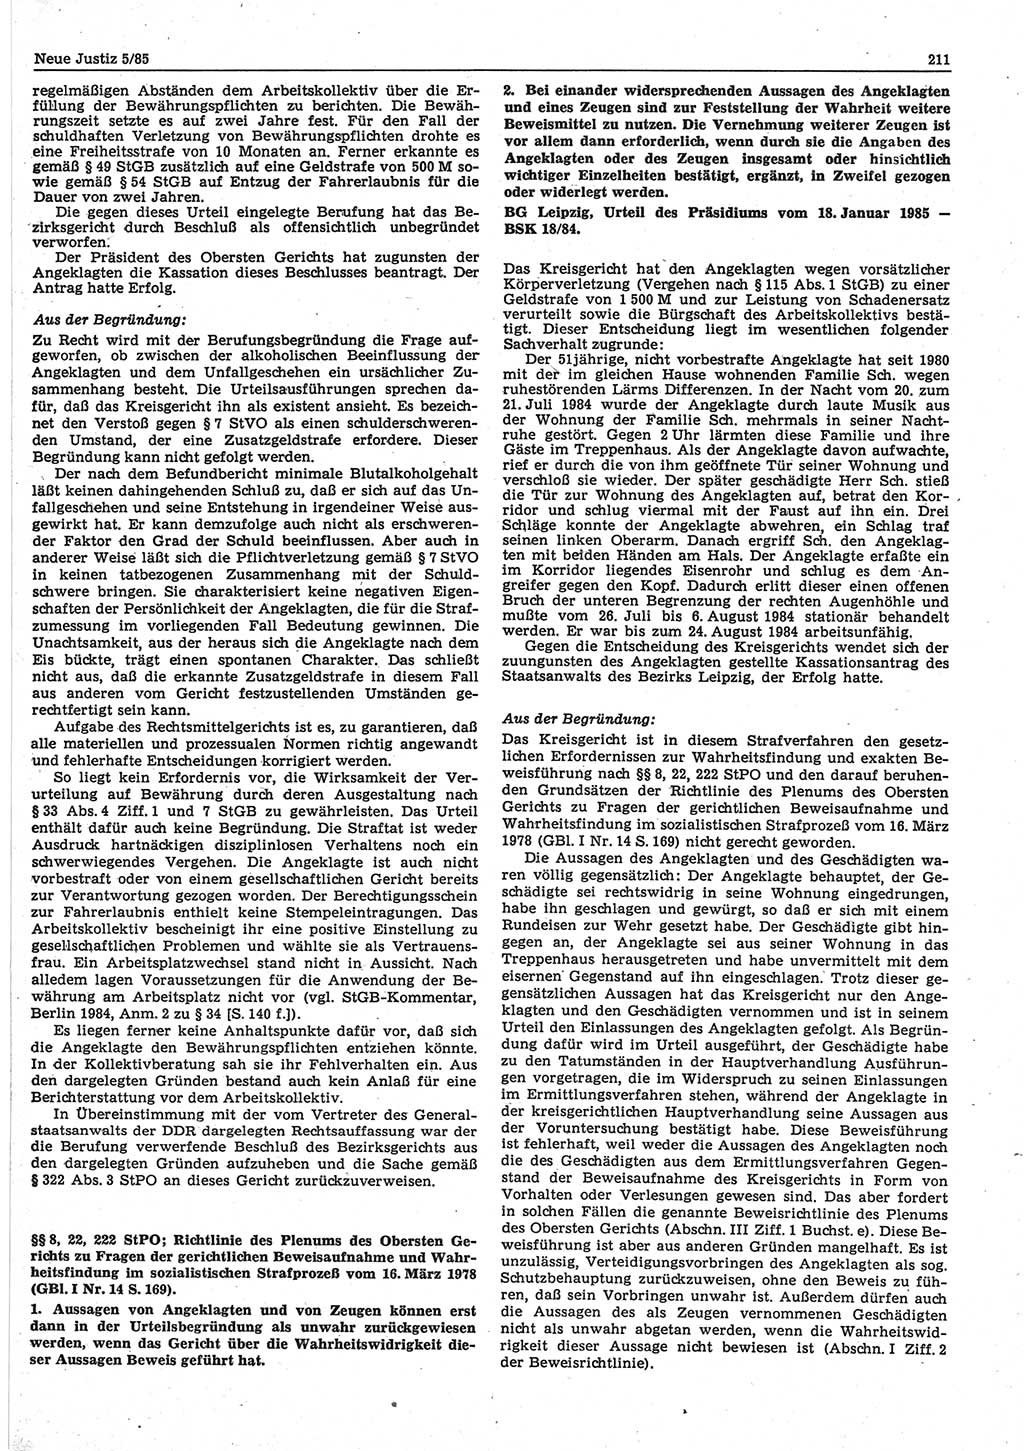 Neue Justiz (NJ), Zeitschrift für sozialistisches Recht und Gesetzlichkeit [Deutsche Demokratische Republik (DDR)], 39. Jahrgang 1985, Seite 211 (NJ DDR 1985, S. 211)